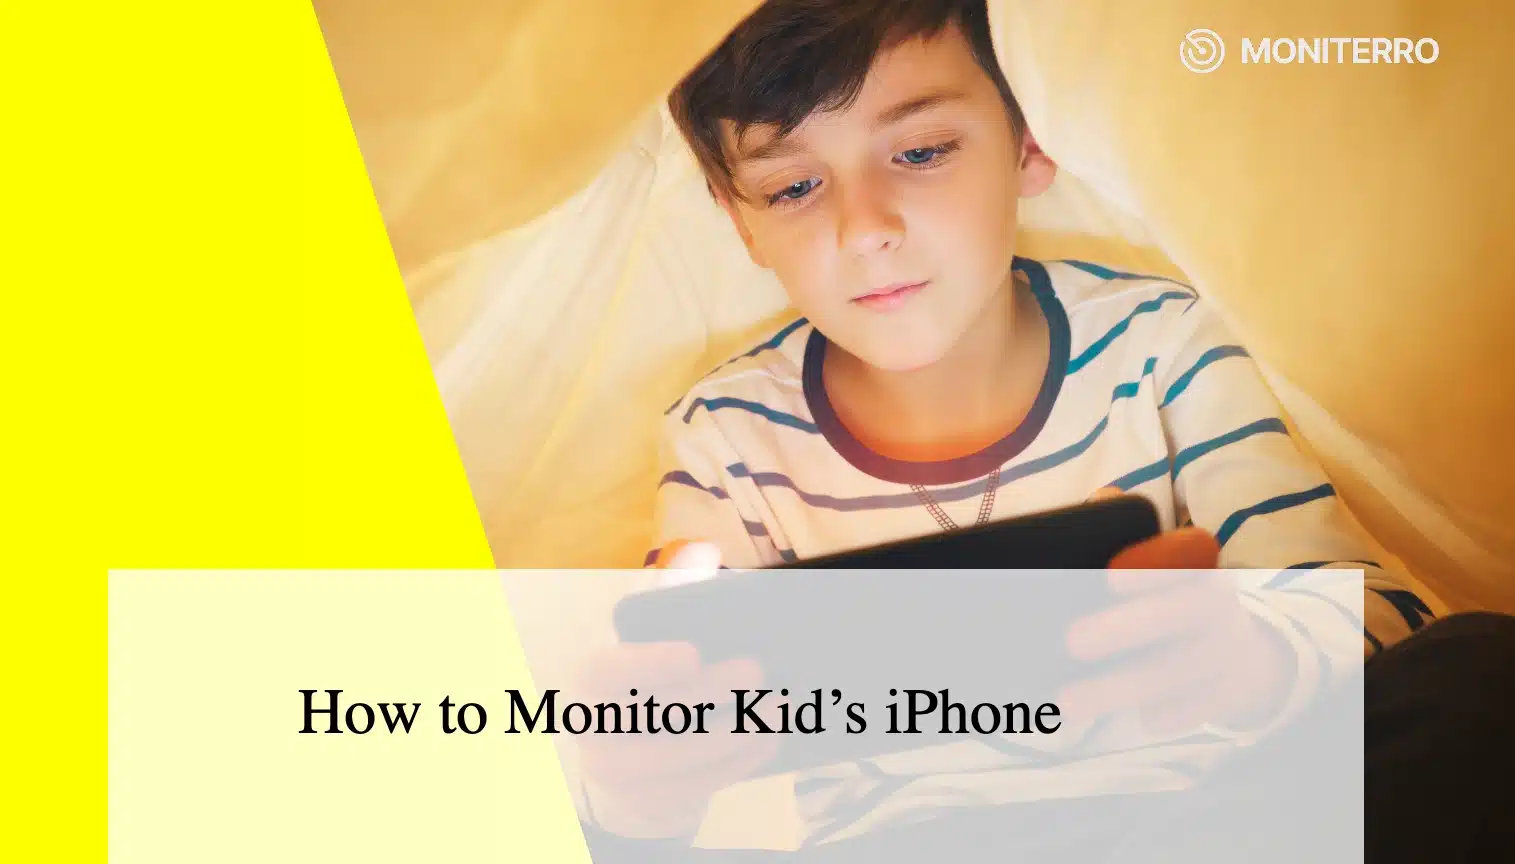 Come monitorare l'iPhone di un bambino